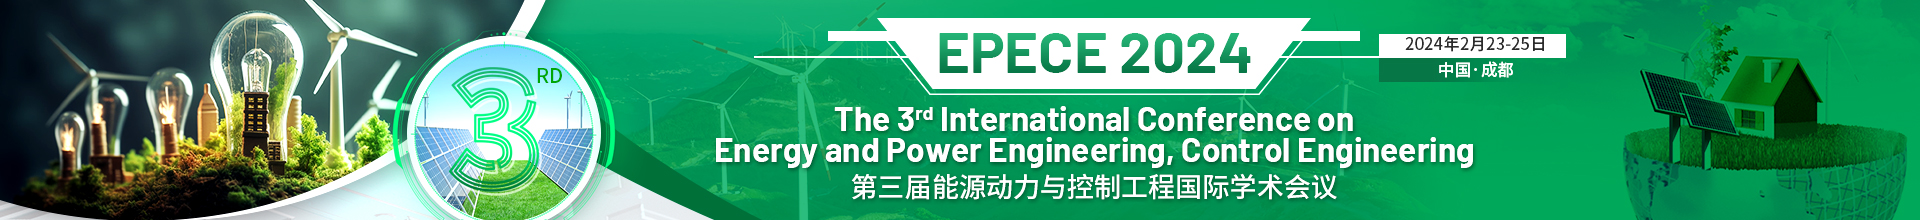 2月成都-EPECE-2024-学术会议云.jpg